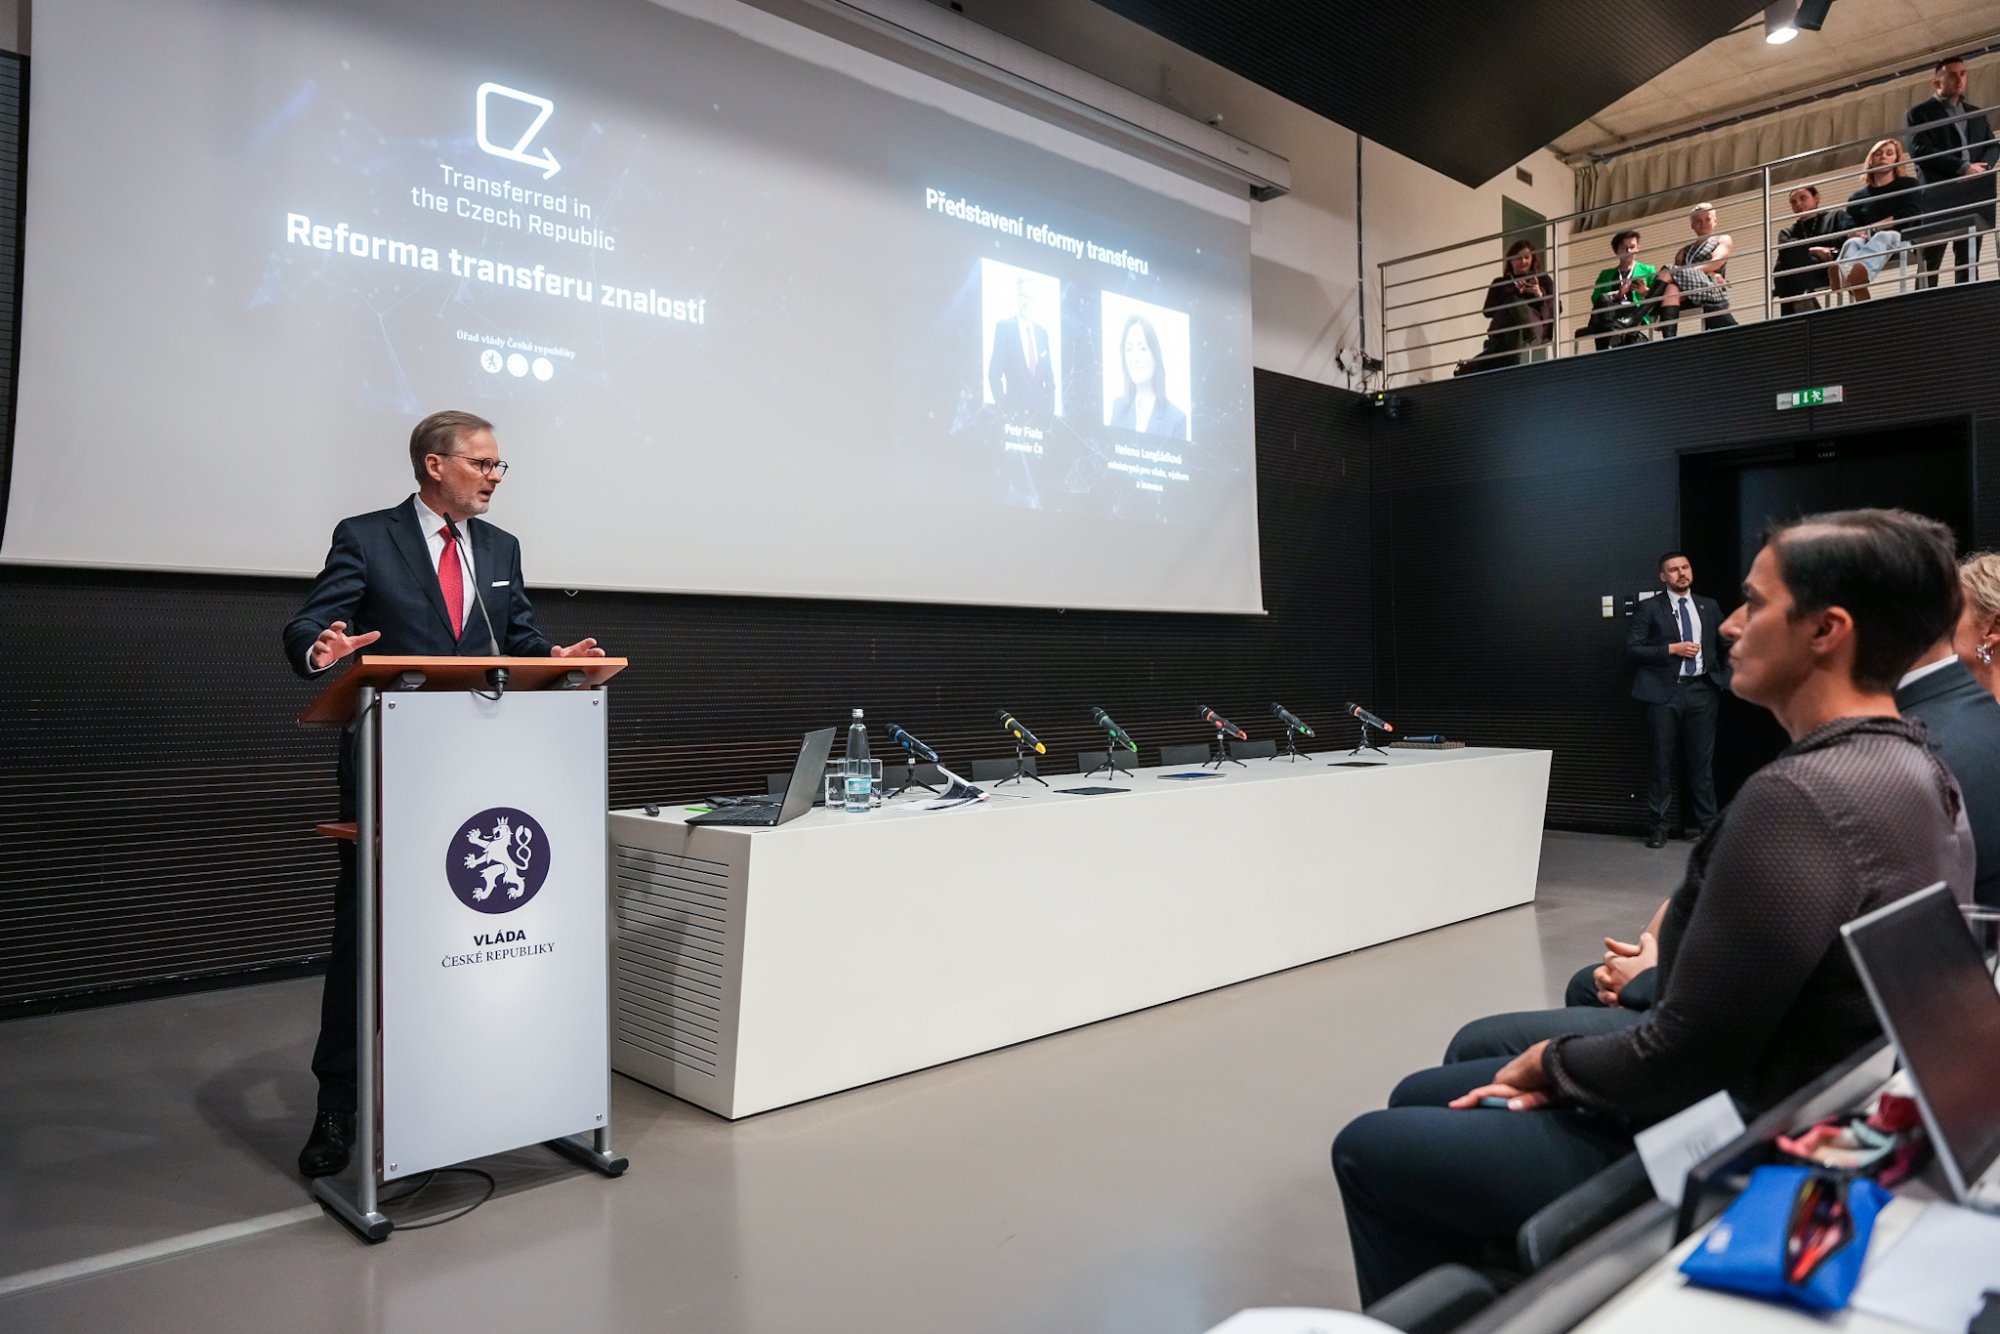 Projev předsedy vlády Petra Fialy na představení reformy transferu znalostí